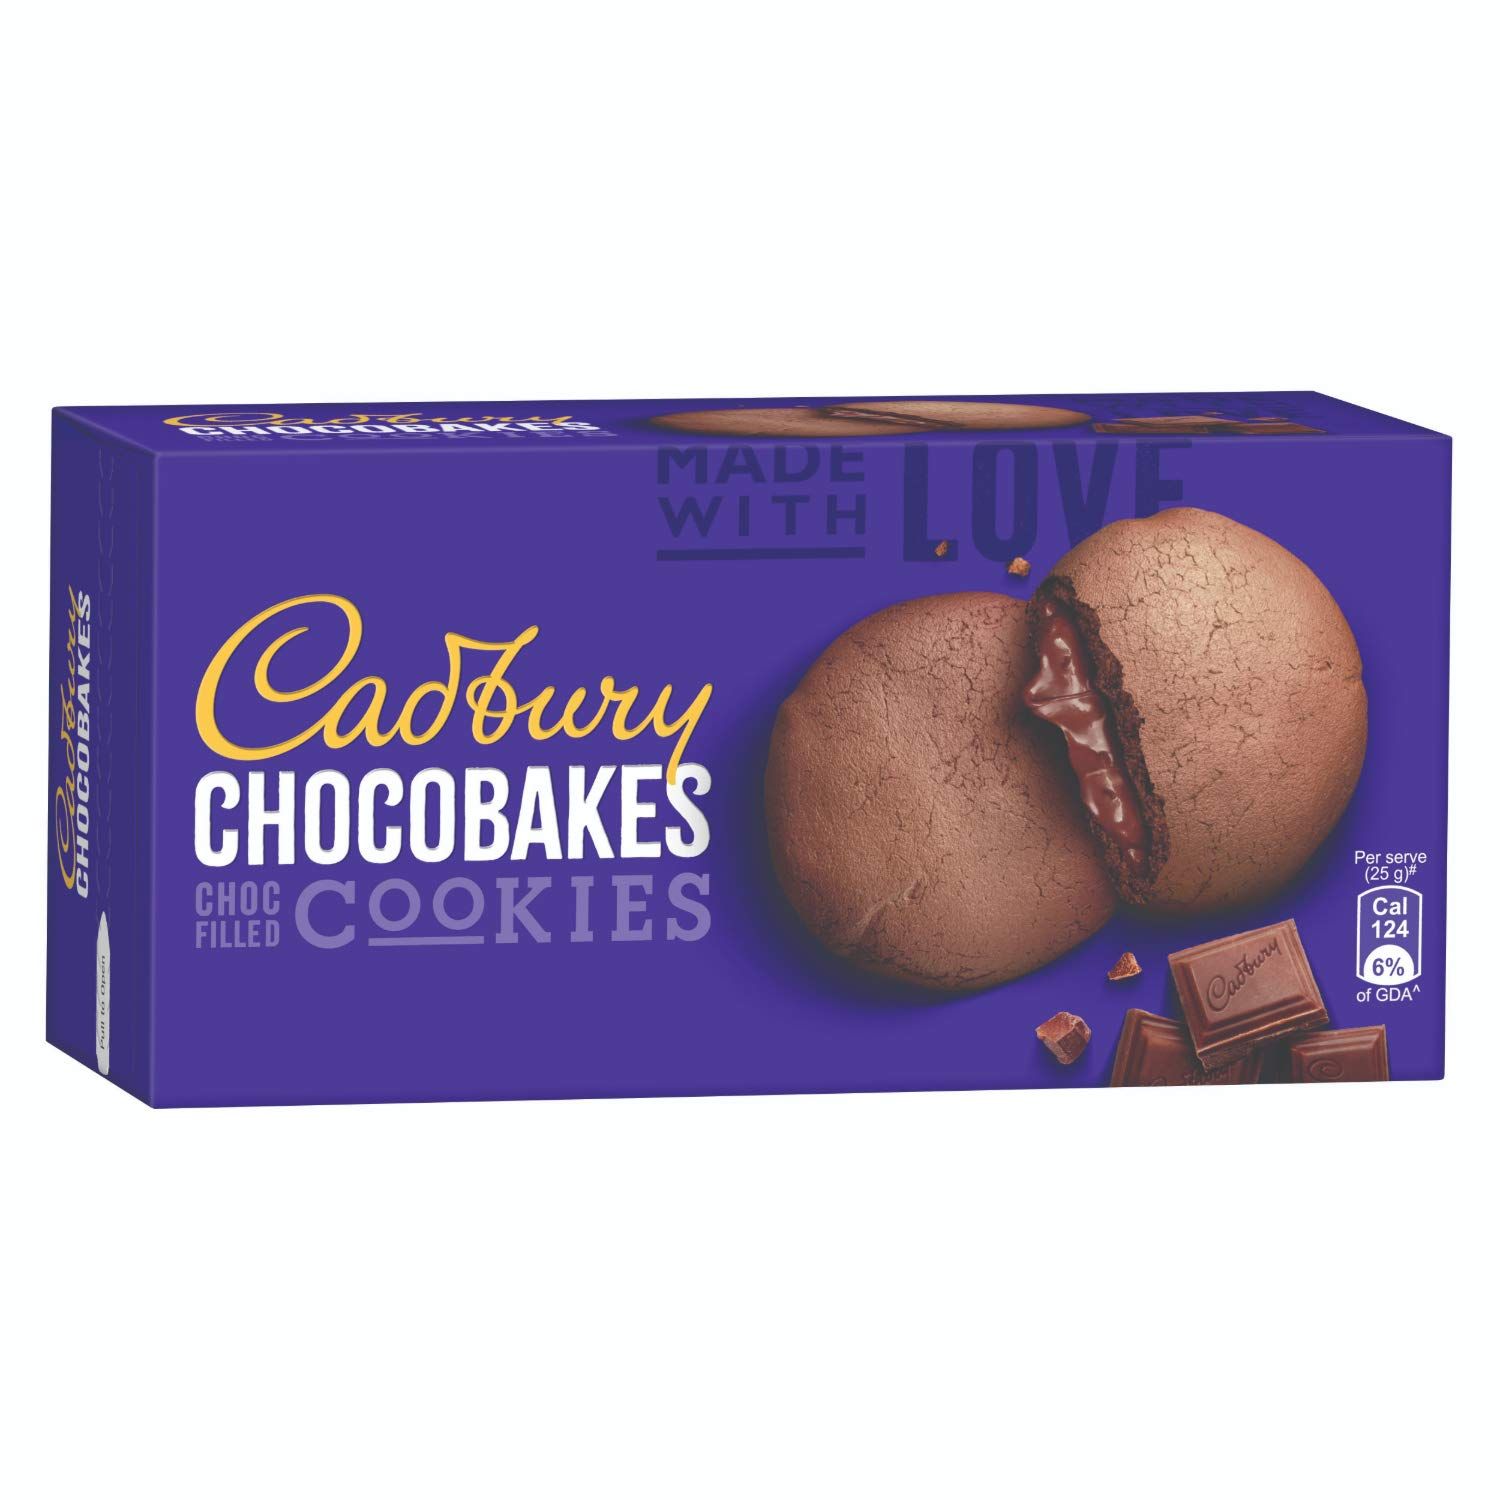 Cadbury Chocobakes Choc Filled Cookies Image